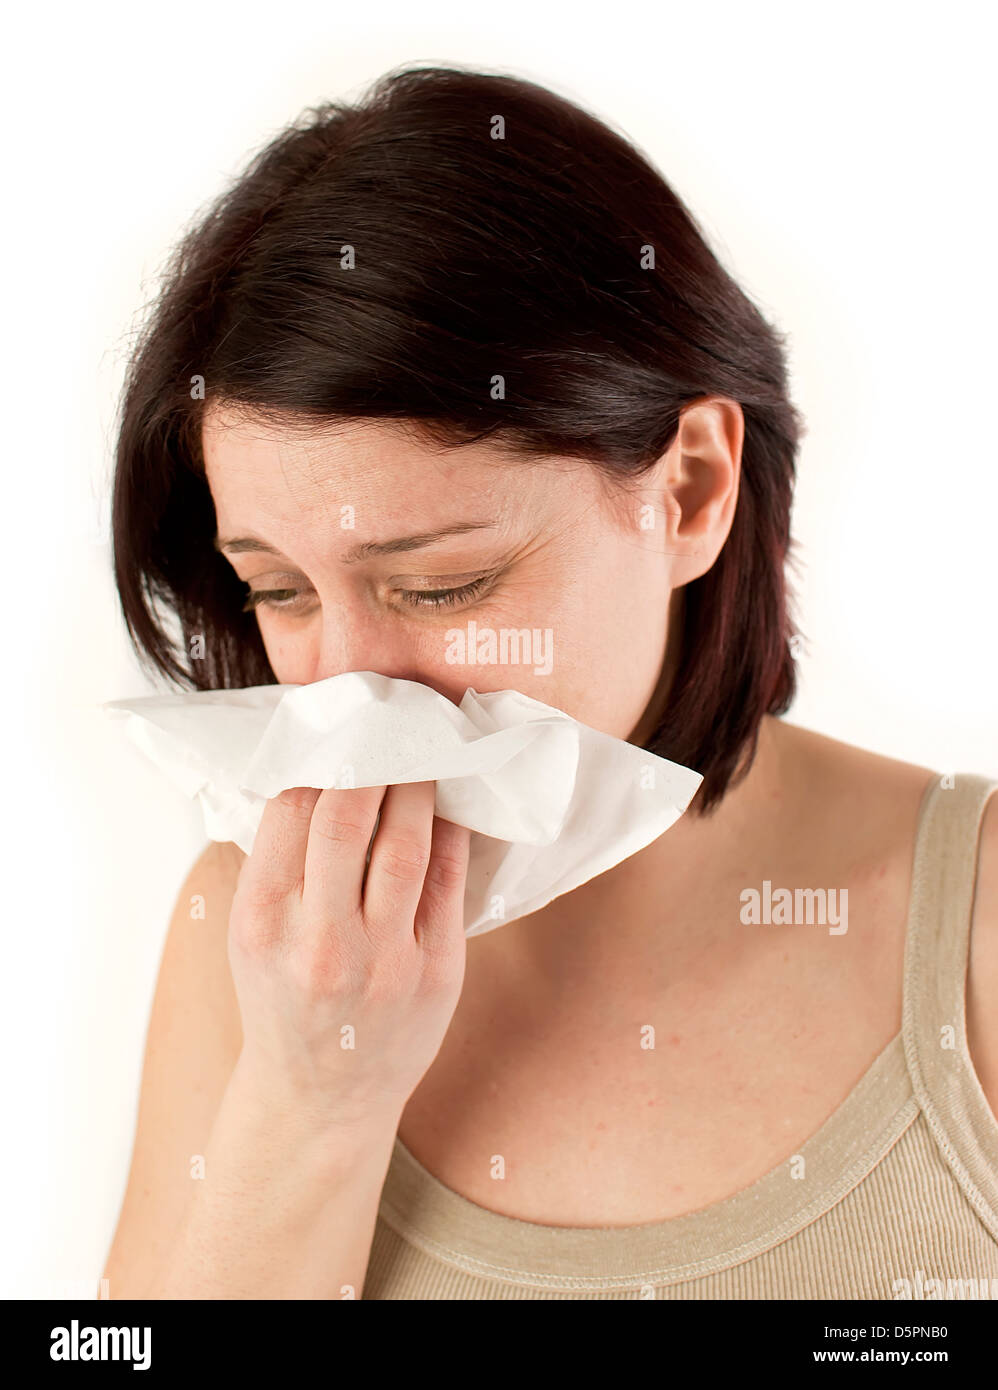 QUIXX NASAL SPRAY - A sneeze